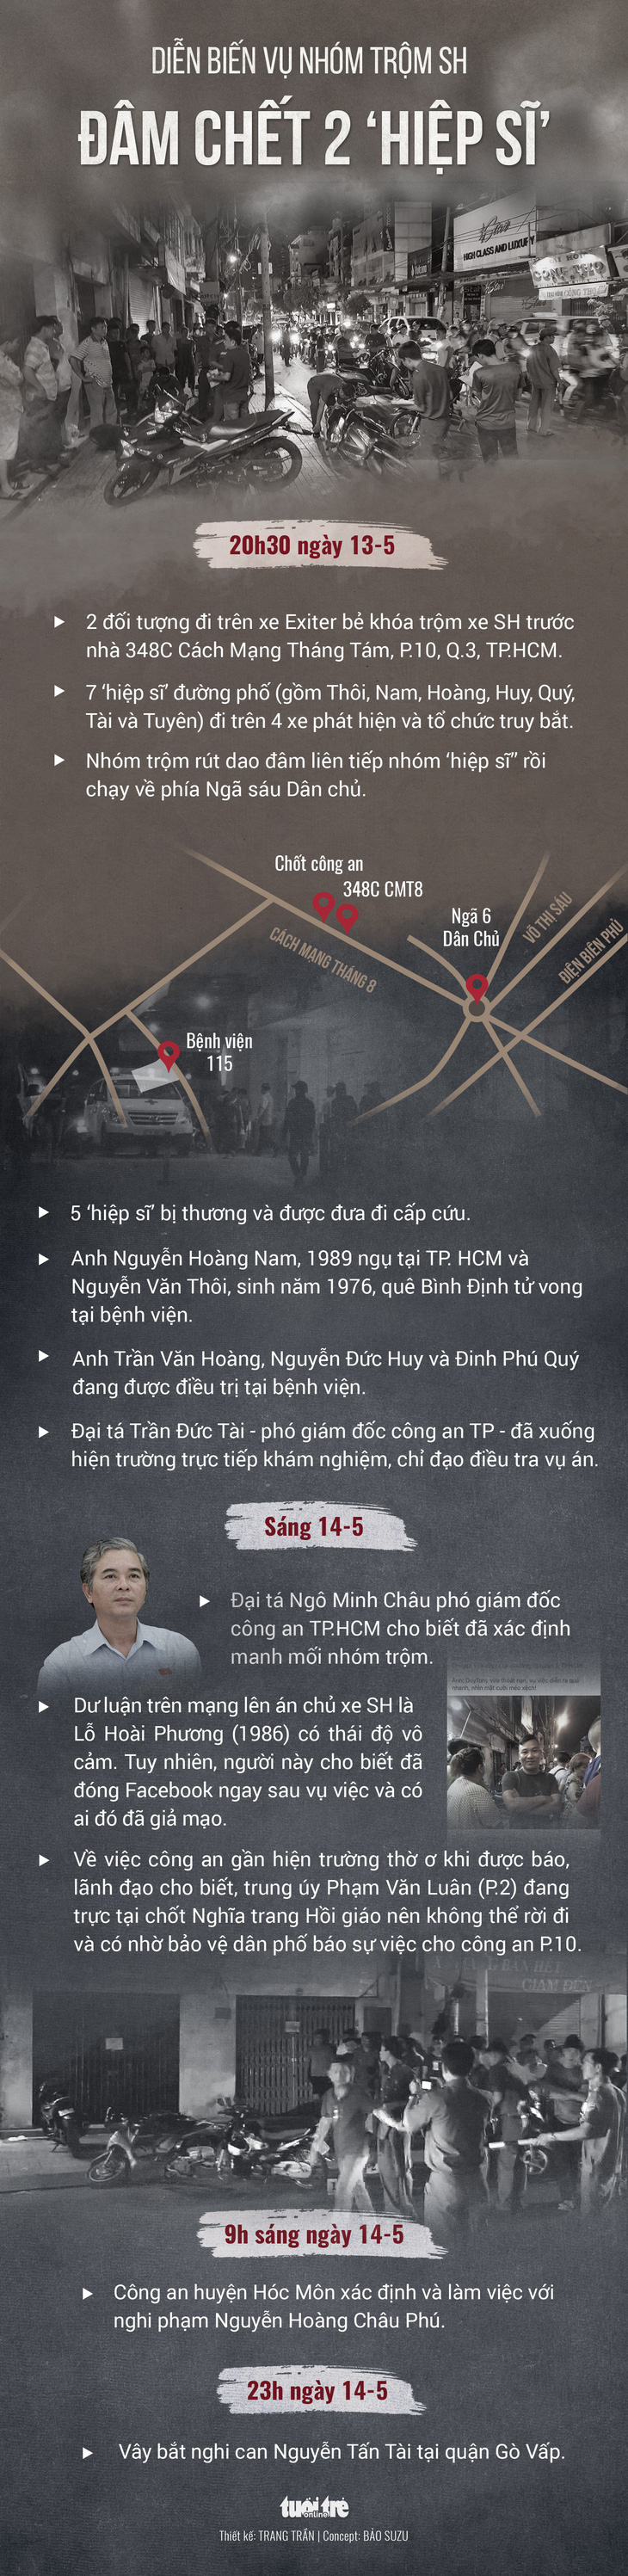 Tướng Phan Anh Minh: Vụ 2 hiệp sĩ là nỗi day dứt của công an TP - Ảnh 2.